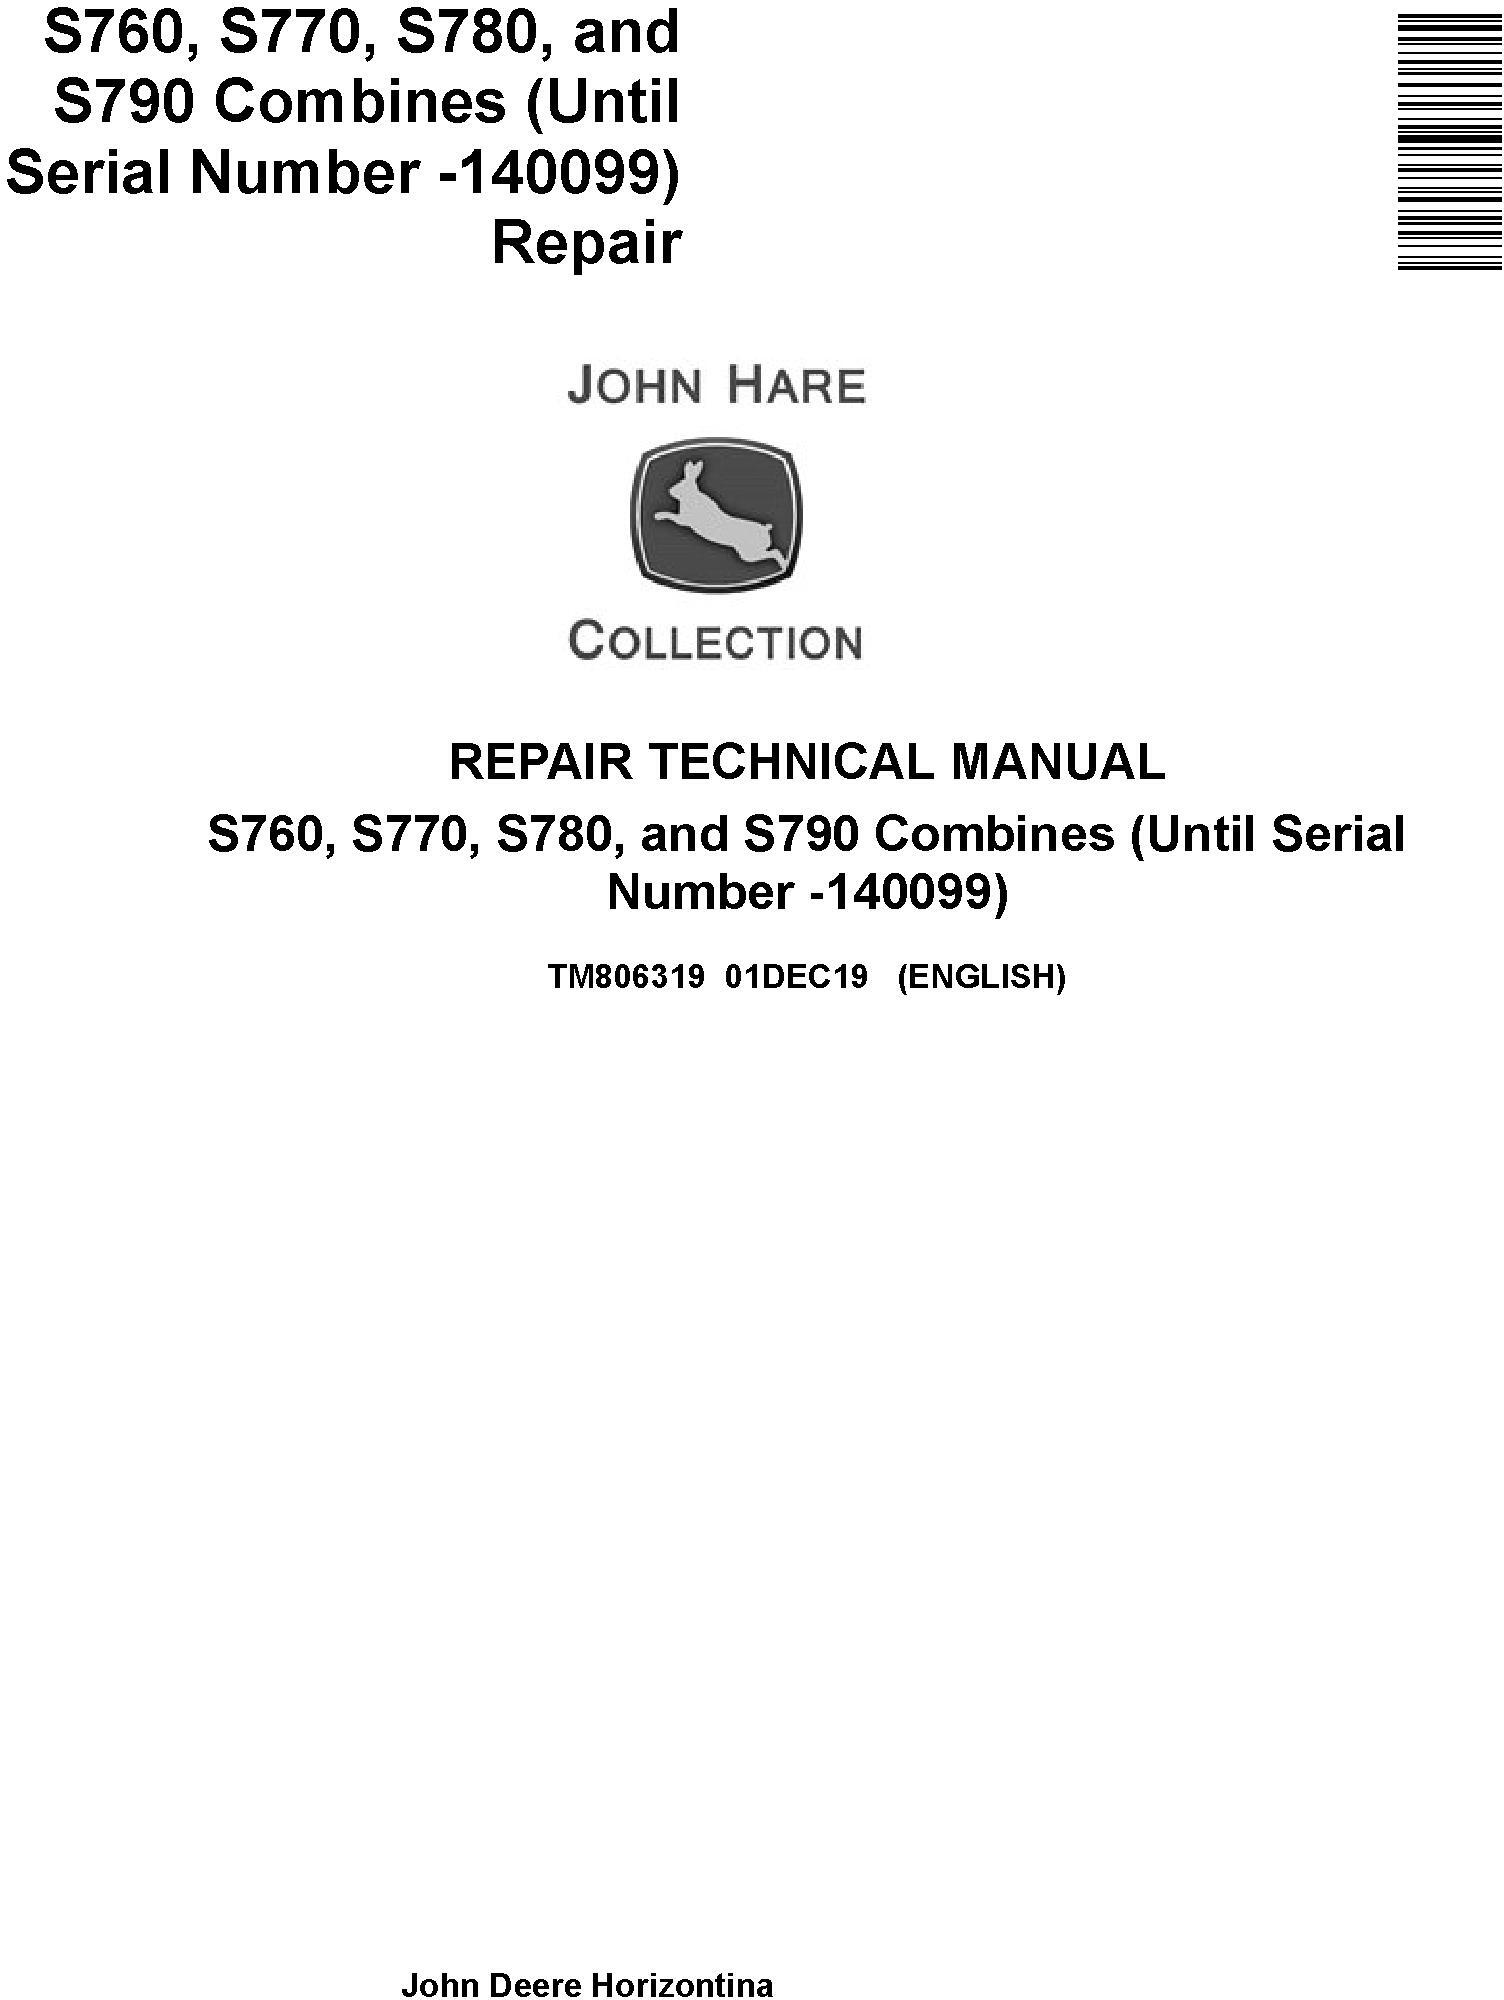 John Deere S760 to S790 Combine Technical Manual TM806319